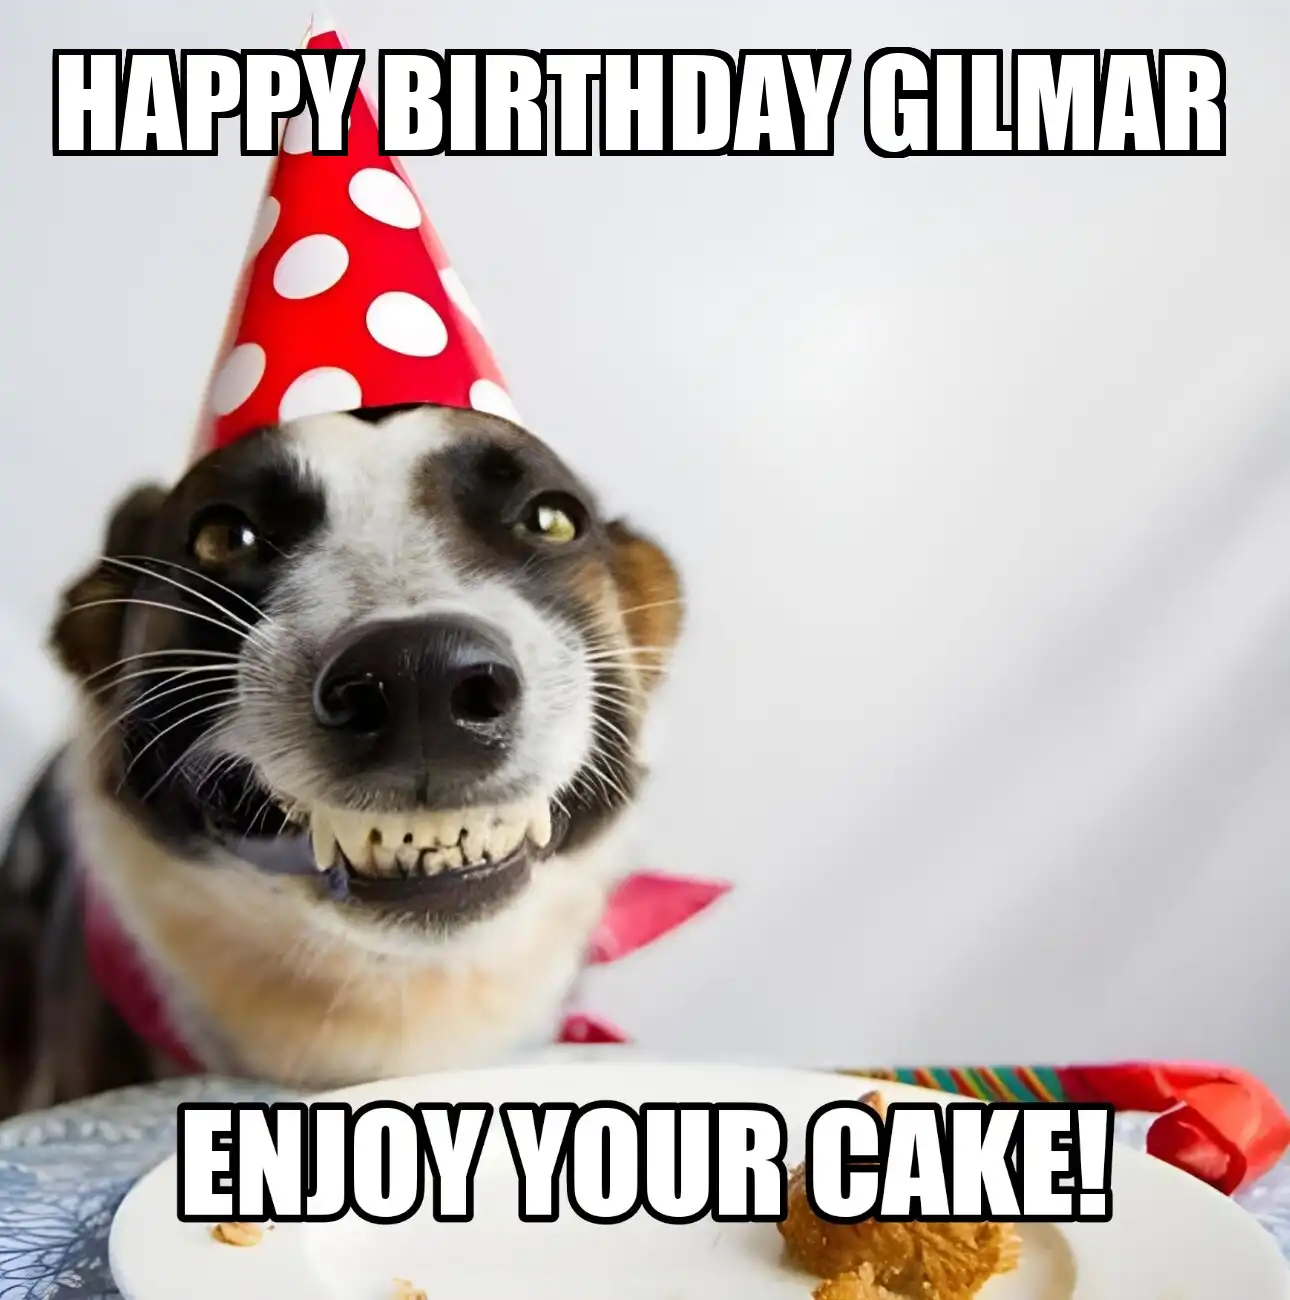 Happy Birthday Gilmar Enjoy Your Cake Dog Meme